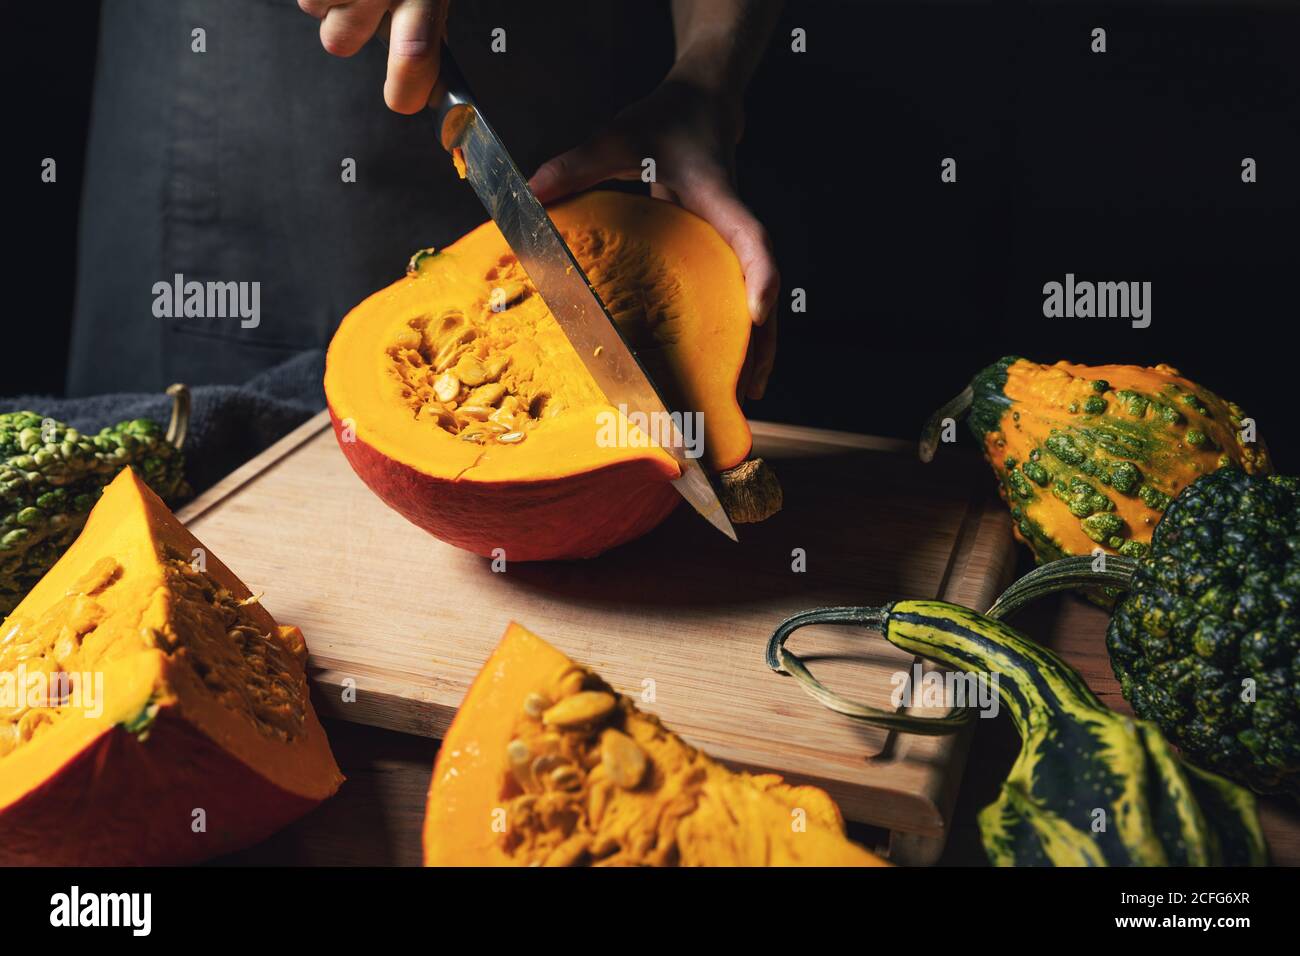 récolte de la saison d'automne - femme coupant de la citrouille avec un couteau pour cuisson sur bois Banque D'Images